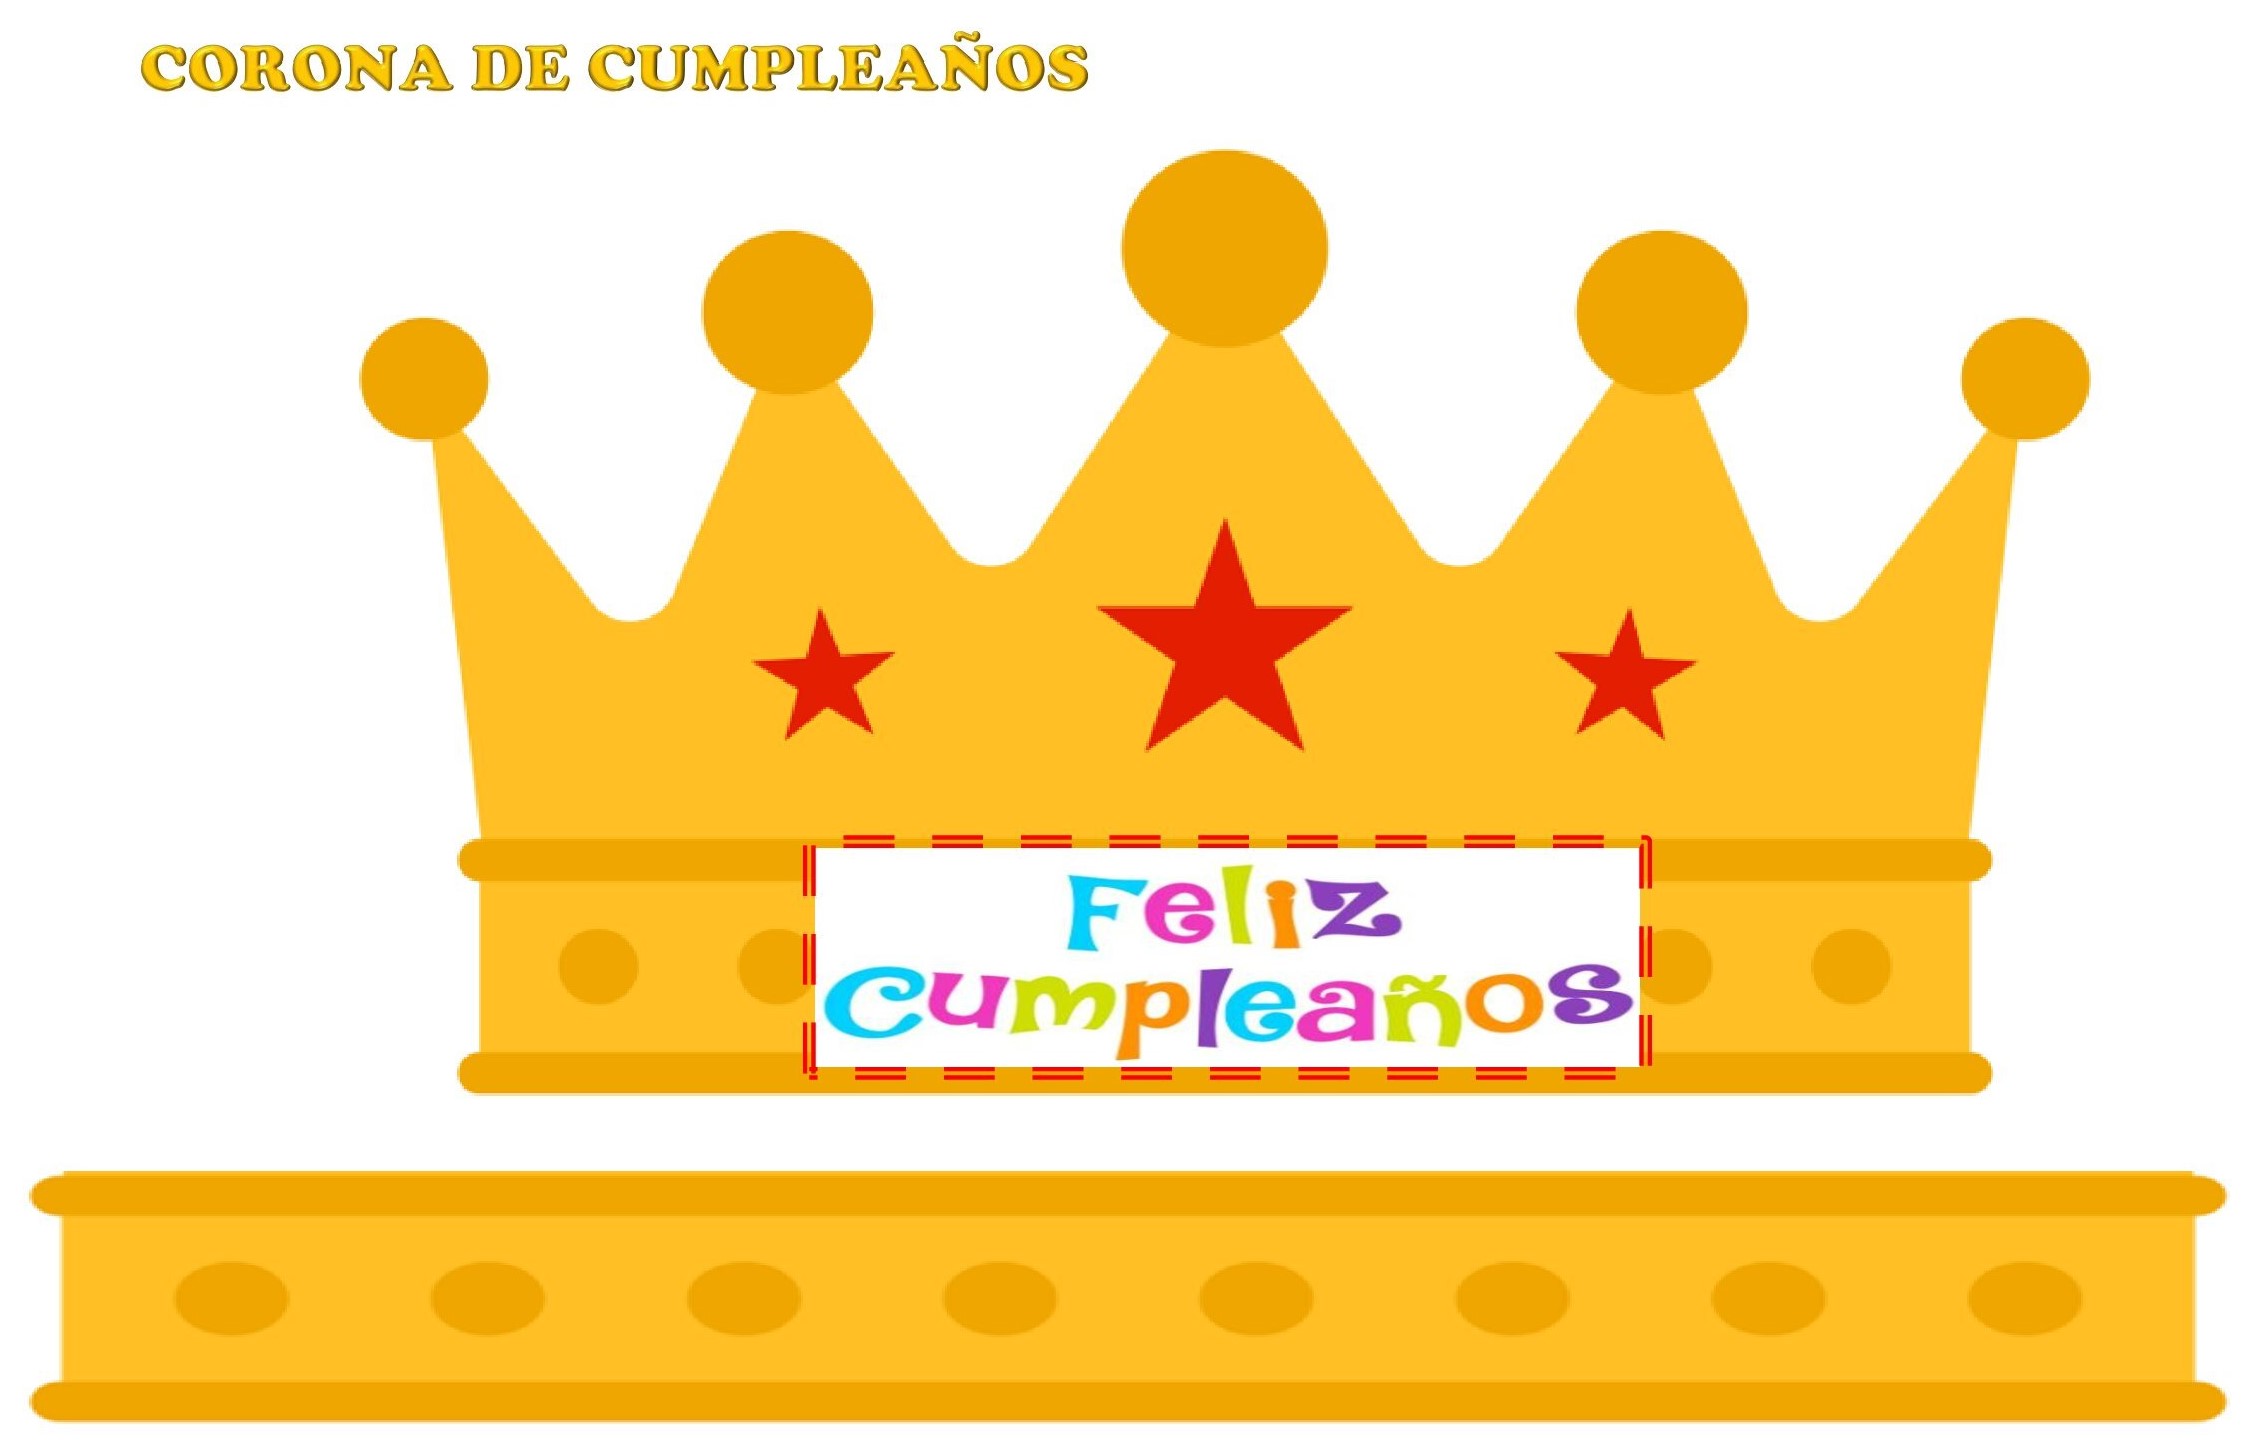 Corona cumpleaños - Web oficial Huella Educativa S.L.